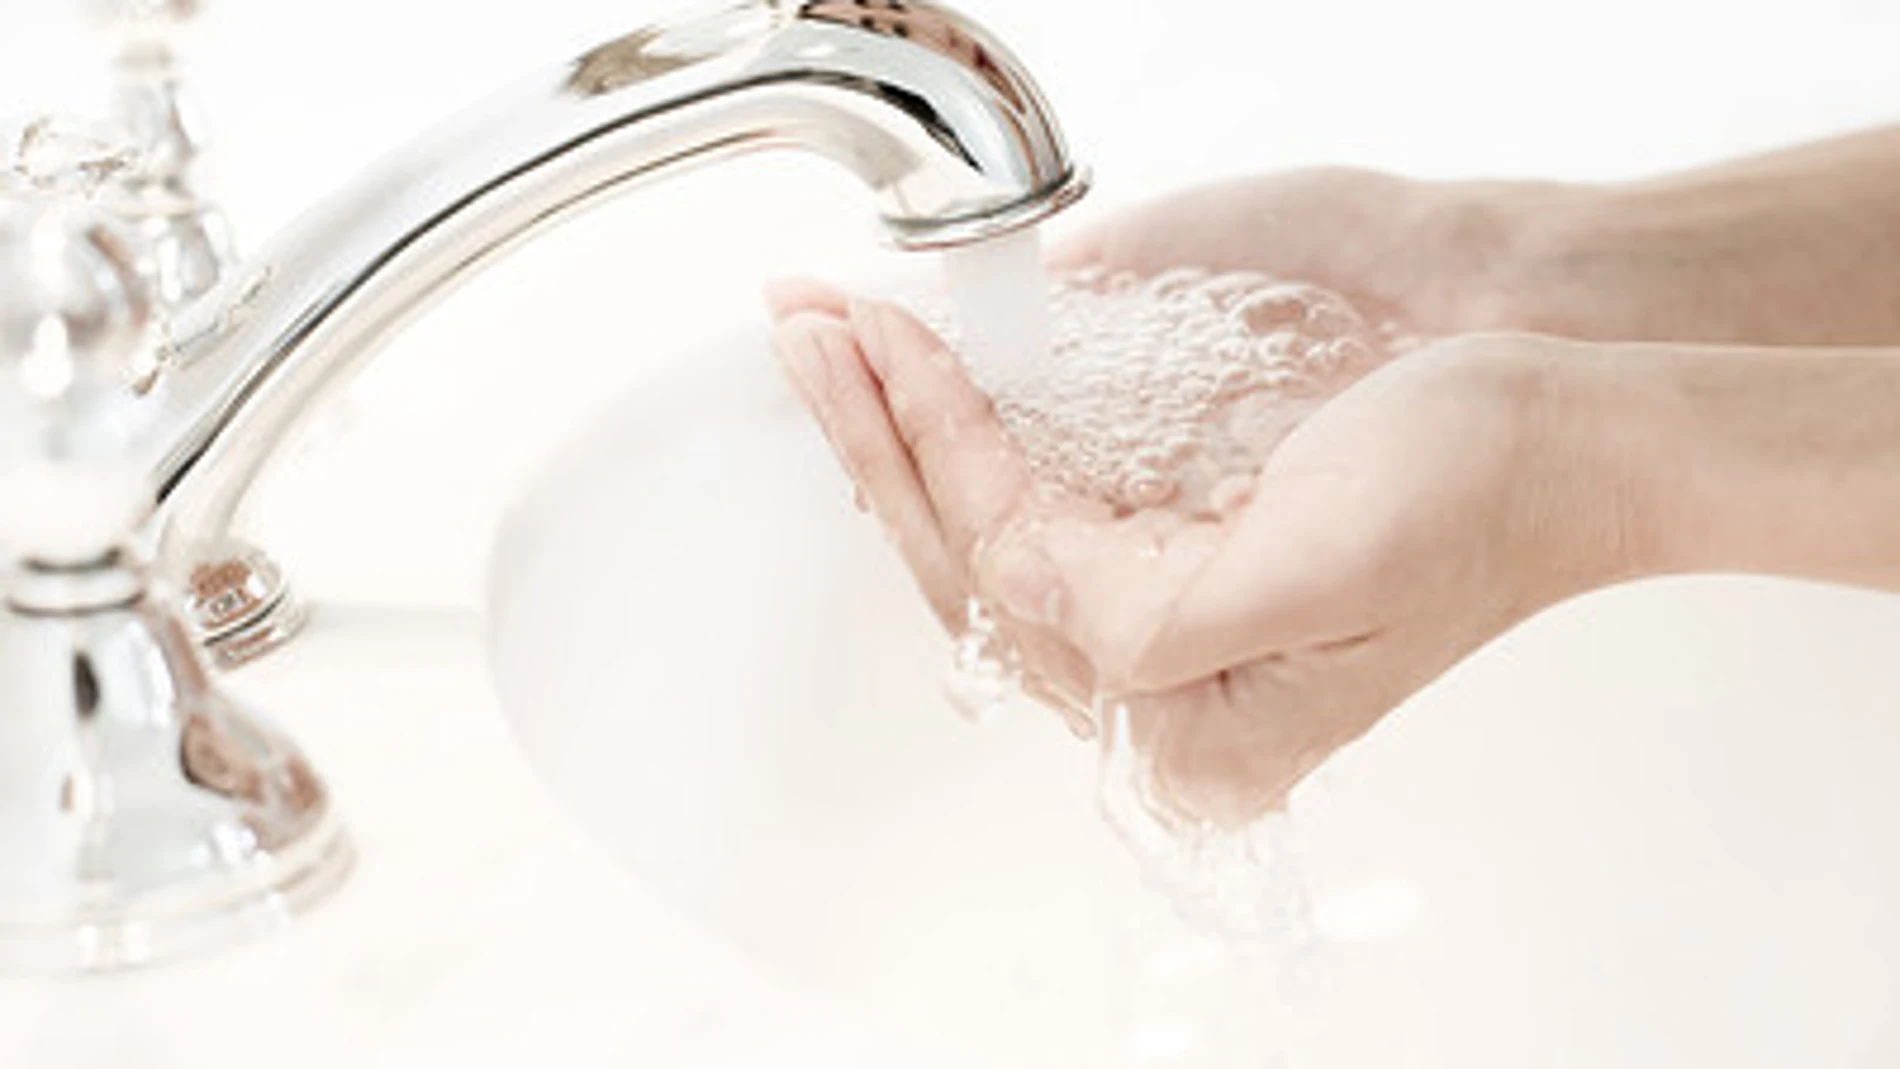 El agua fría es tan efectiva como la caliente para eliminar las bacterias de las manos